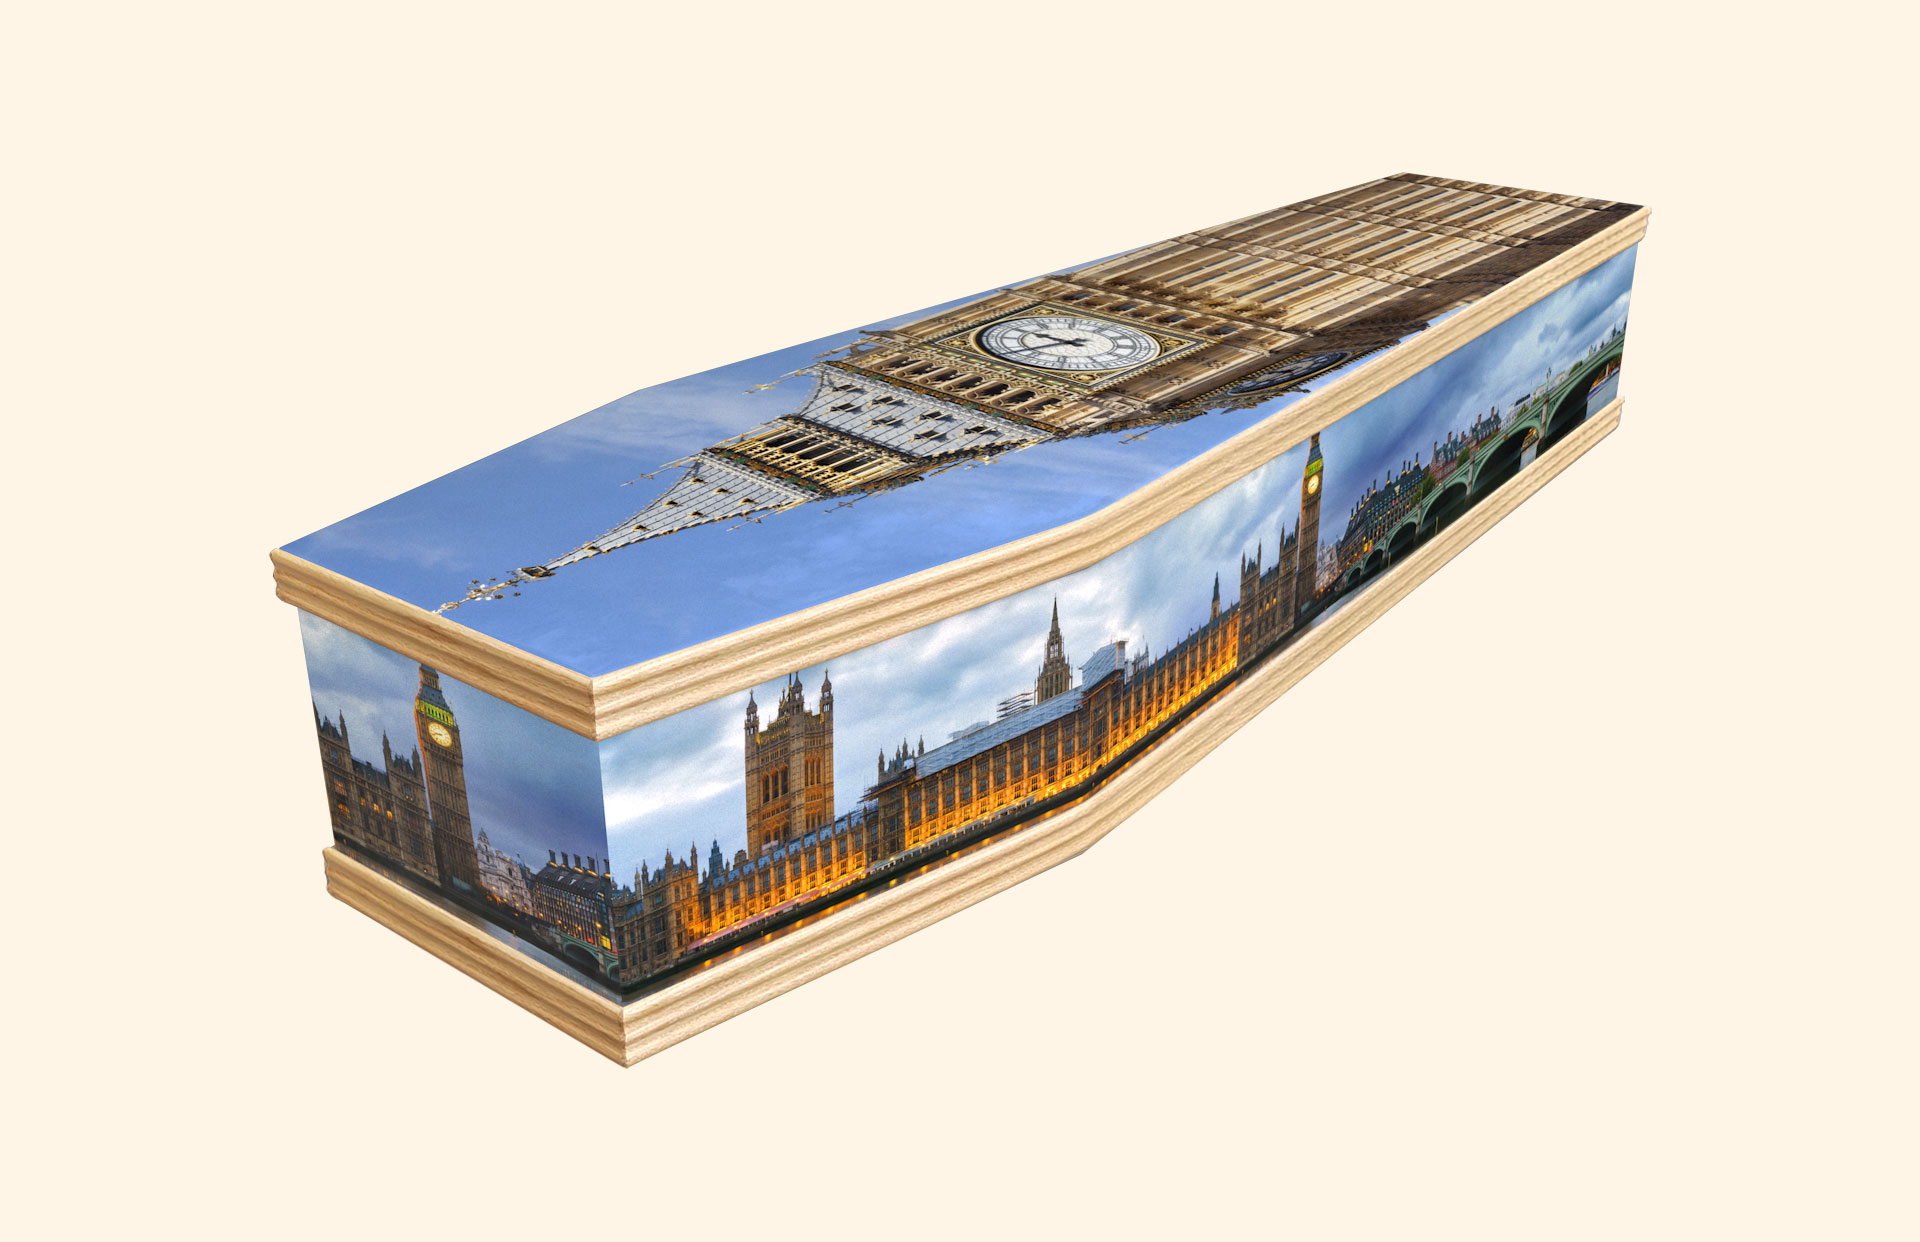 The London Scene design on a classic coffin